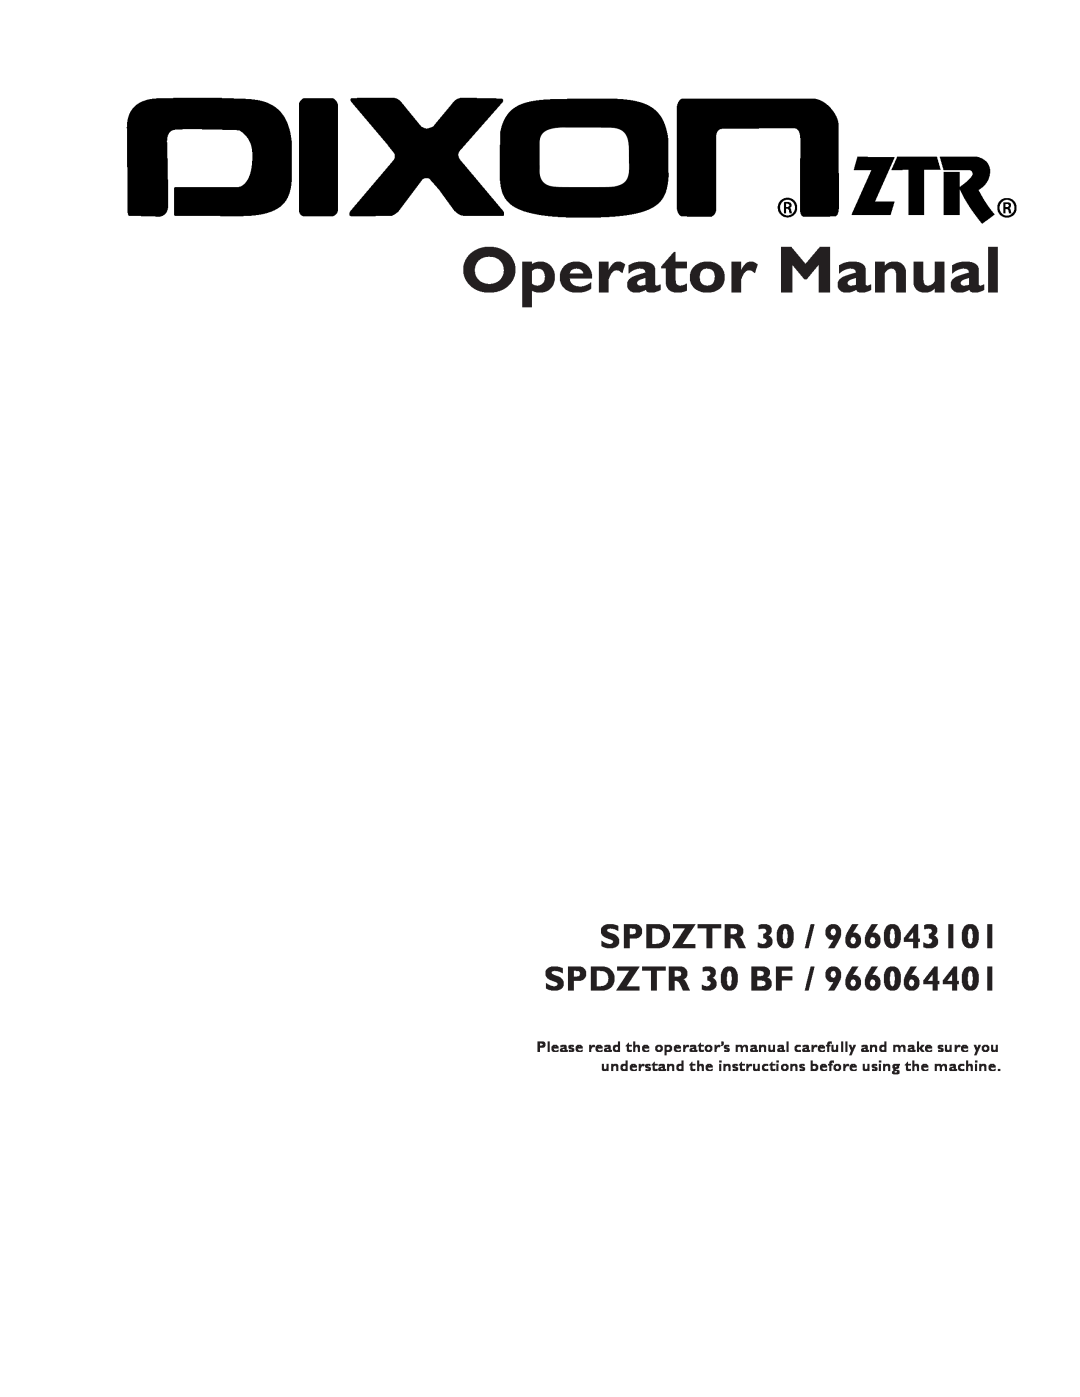 Dixon 966064401 manual Operator Manual, SPDZTR 30 / 966043101 SPDZTR 30 BF 